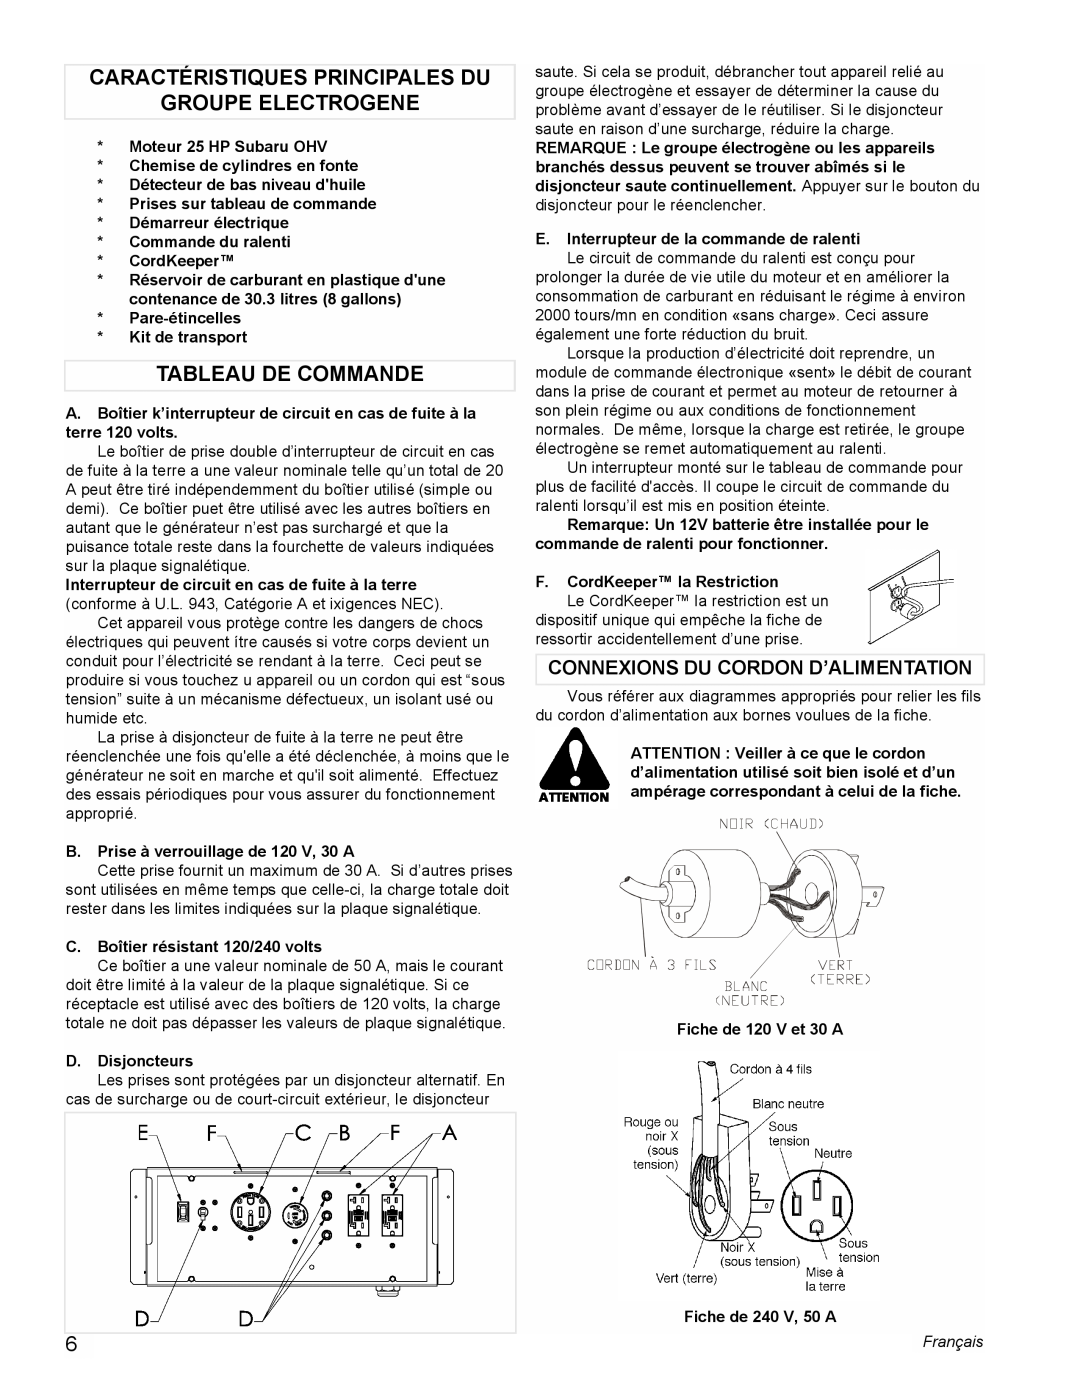 Powermate PM0601350 manual Caractéristiques Principales Du Groupe Electrogene, Tableau De Commande, Français 